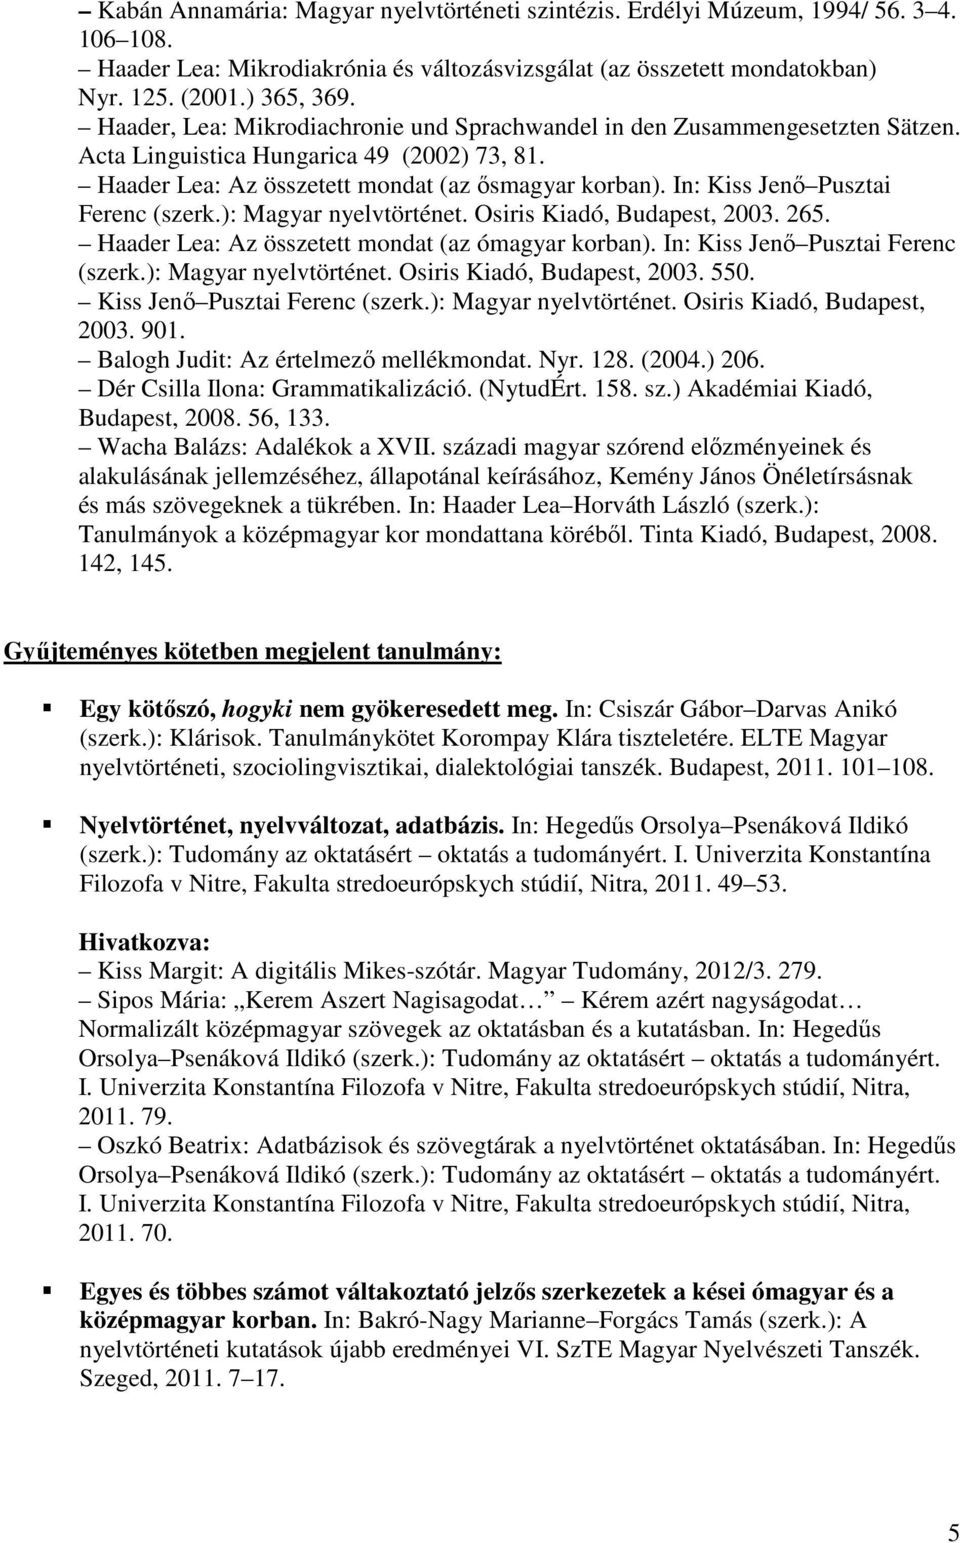 In: Kiss Jenı Pusztai Ferenc (szerk.): Magyar nyelvtörténet. Osiris Kiadó, Budapest, 2003. 265. Haader Lea: Az összetett mondat (az ómagyar korban). In: Kiss Jenı Pusztai Ferenc (szerk.